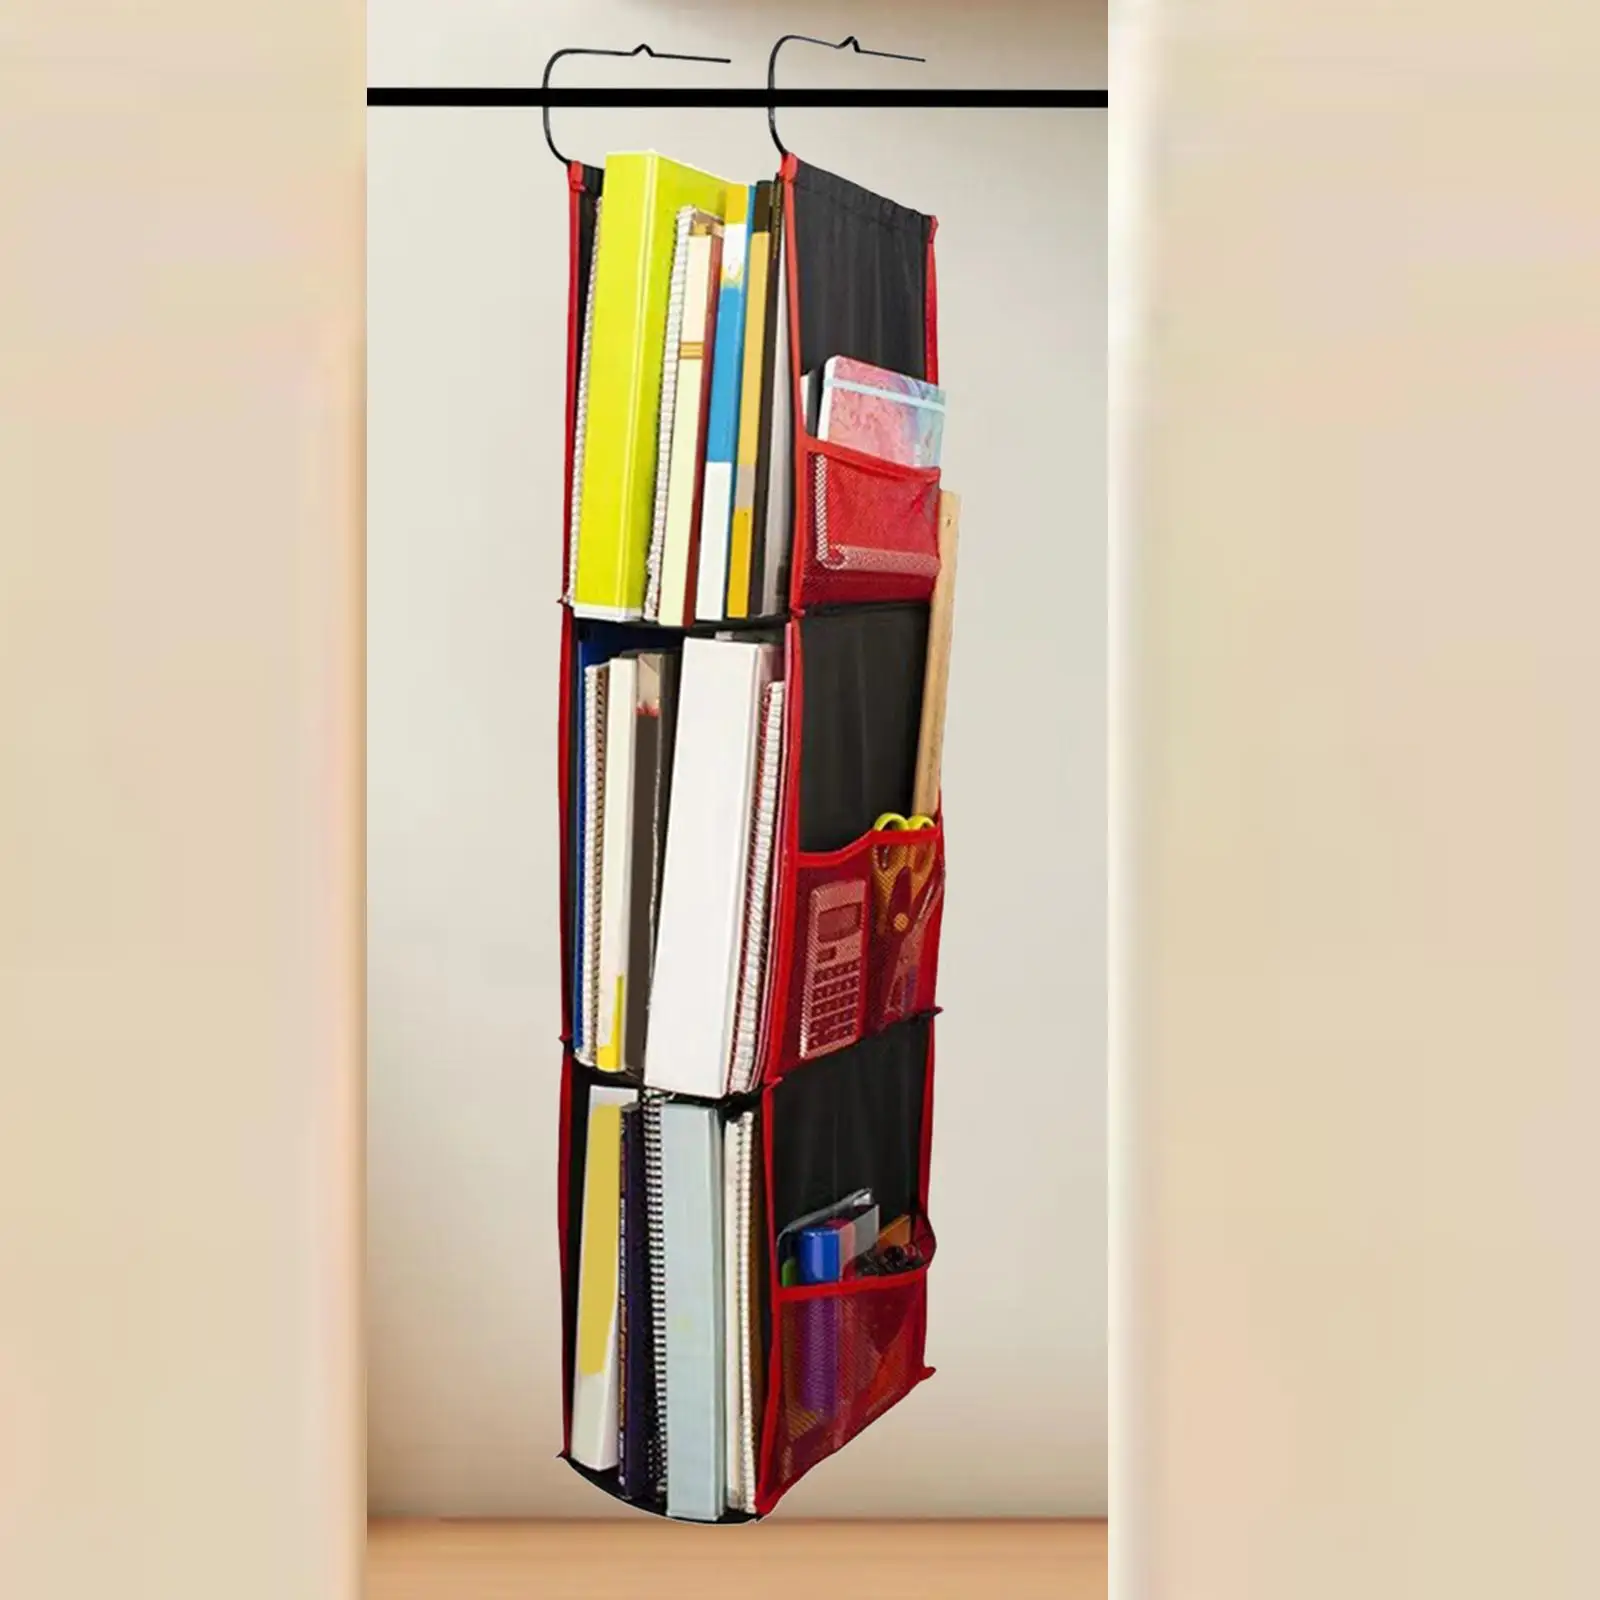 Hanging Locker Organizer Adjustable Holder Storage Basket Oxford Versatile Mesh Pockets Storage Bag Shelves for School Office